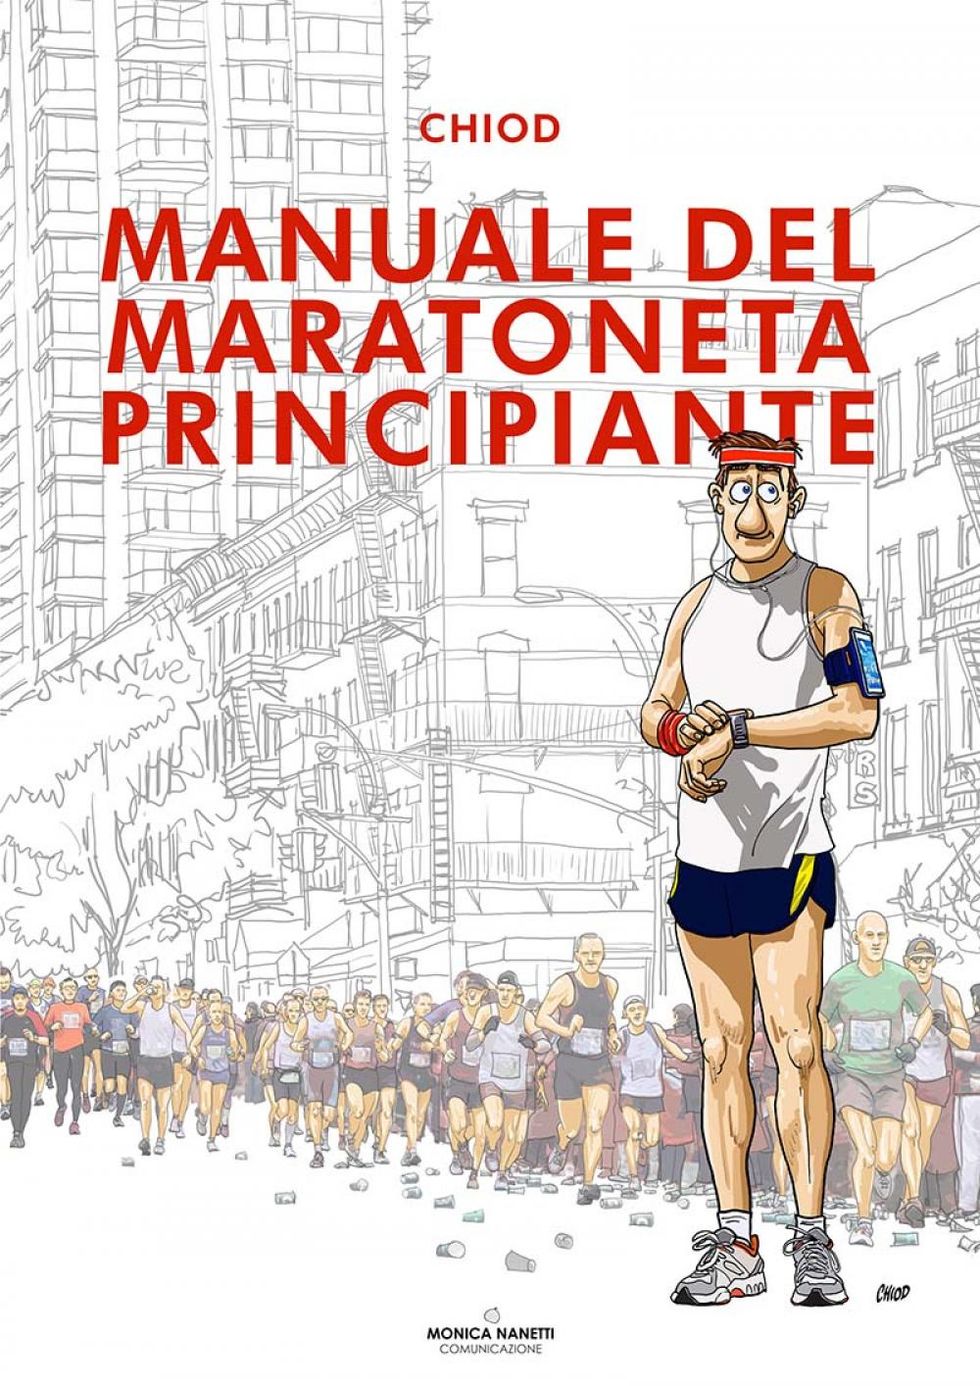 La cover del Manuale del maratoneta principiante, di Chiod